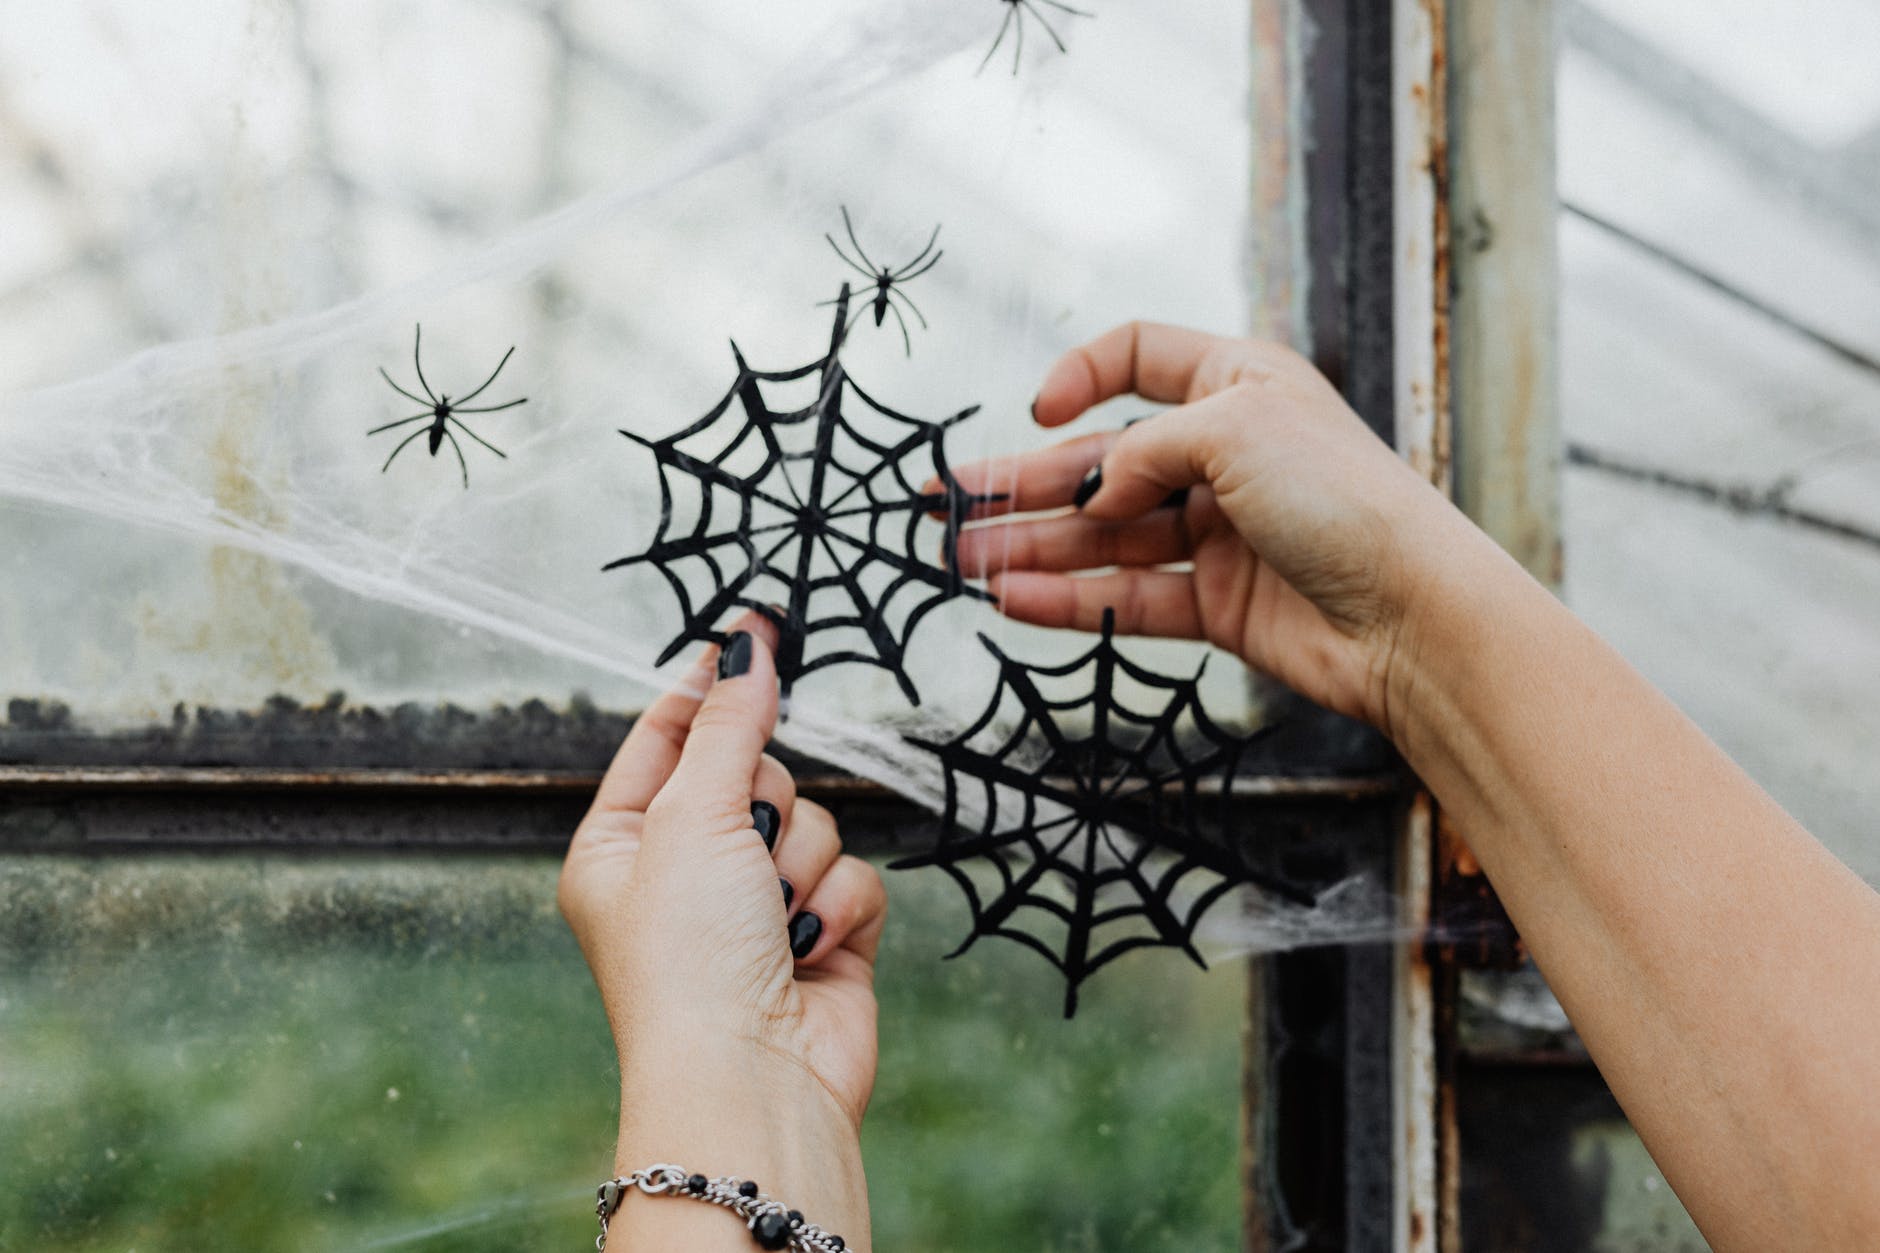 10 idees originales pour feter Halloween 2021 a la maison en toute securite 3 10 idées originales pour fêter Halloween 2021 à la maison en toute sécurité